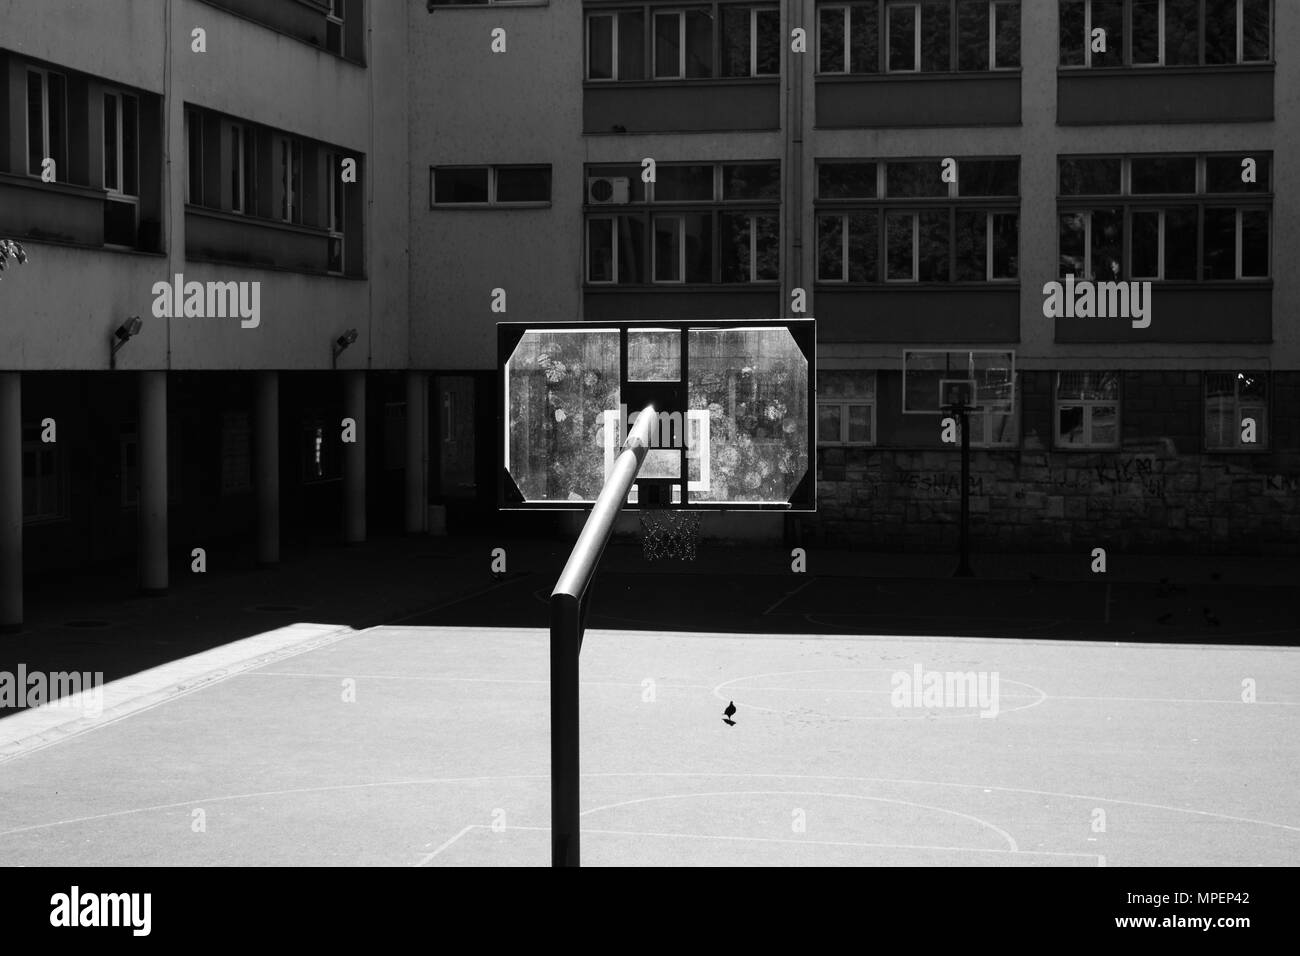 Piscine en plein air de basket dans la cour de l'école. Photo en noir et blanc. Milieu urbain. Banque D'Images